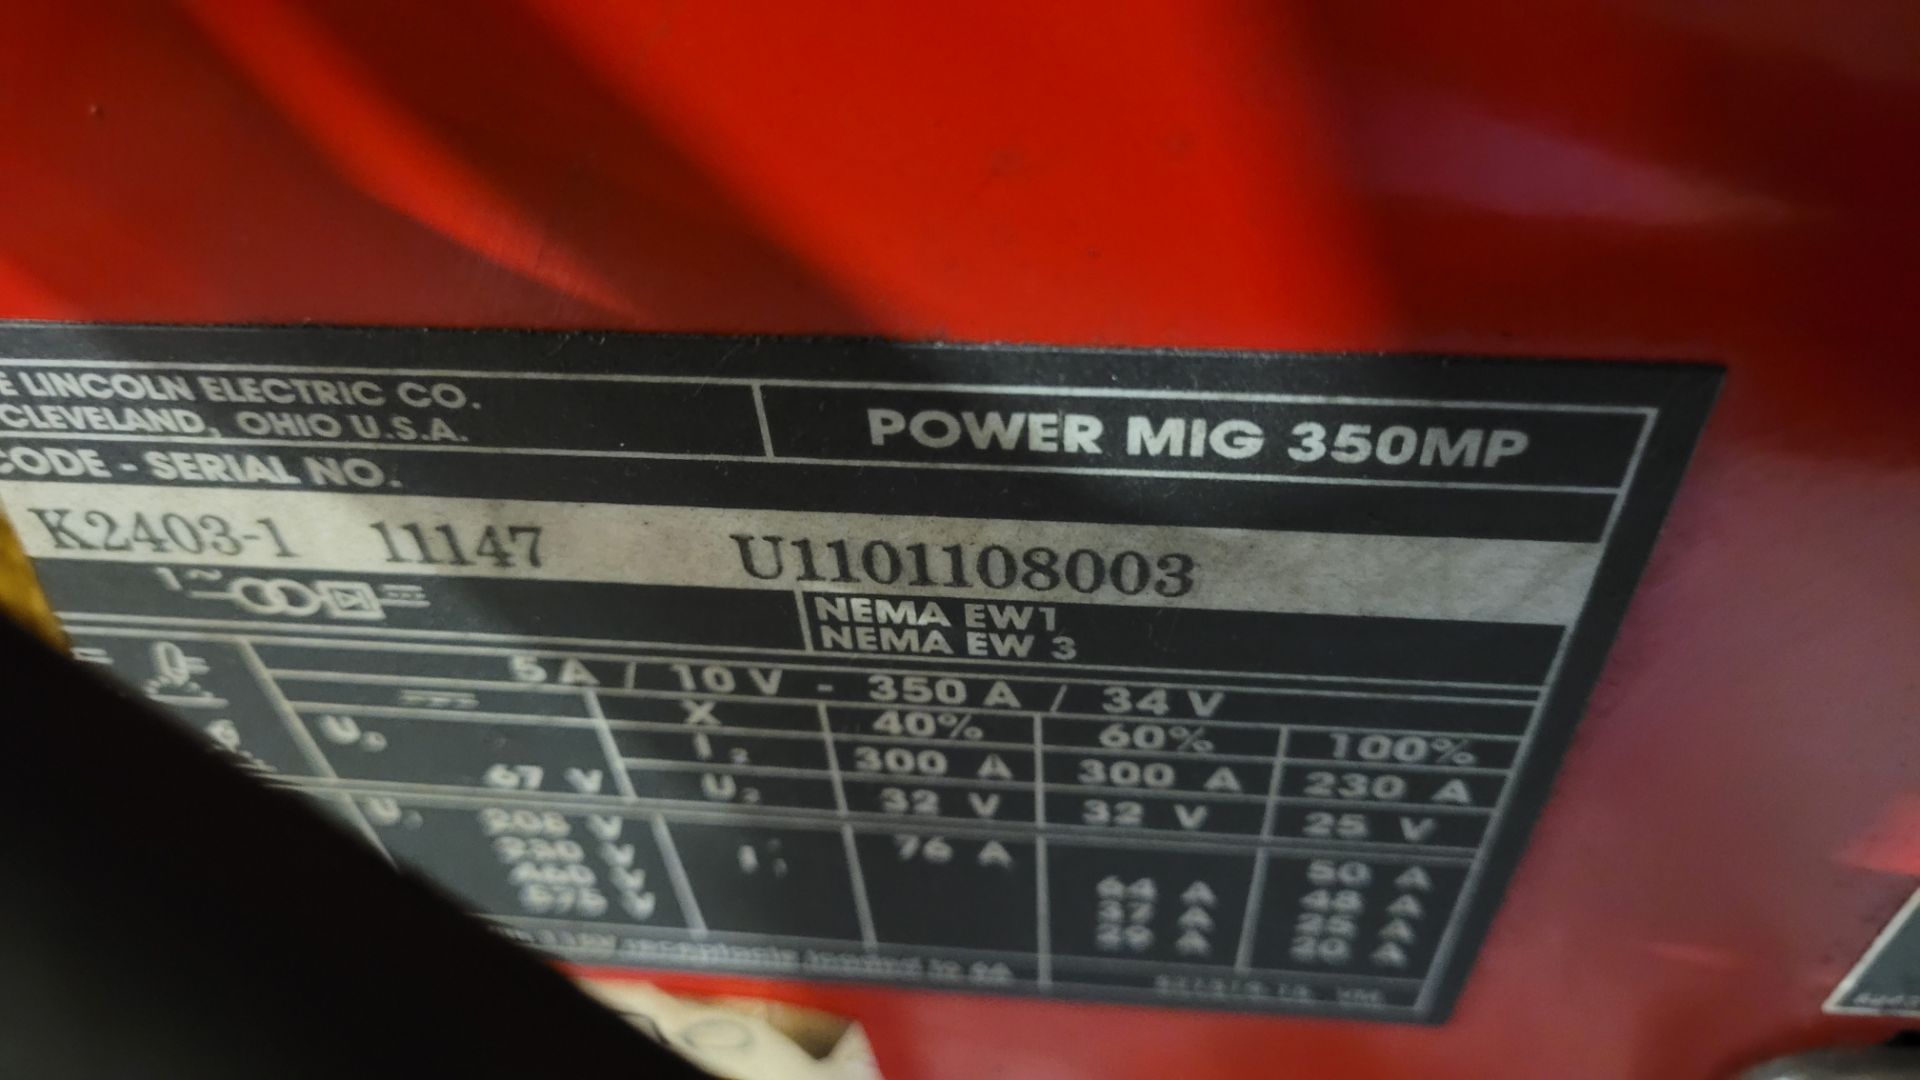 LINCOLN ELECTRIC 350 MP POWER MIG WELDER, CODE K2403-1 11147, S/N U1101108003 - Bild 3 aus 3